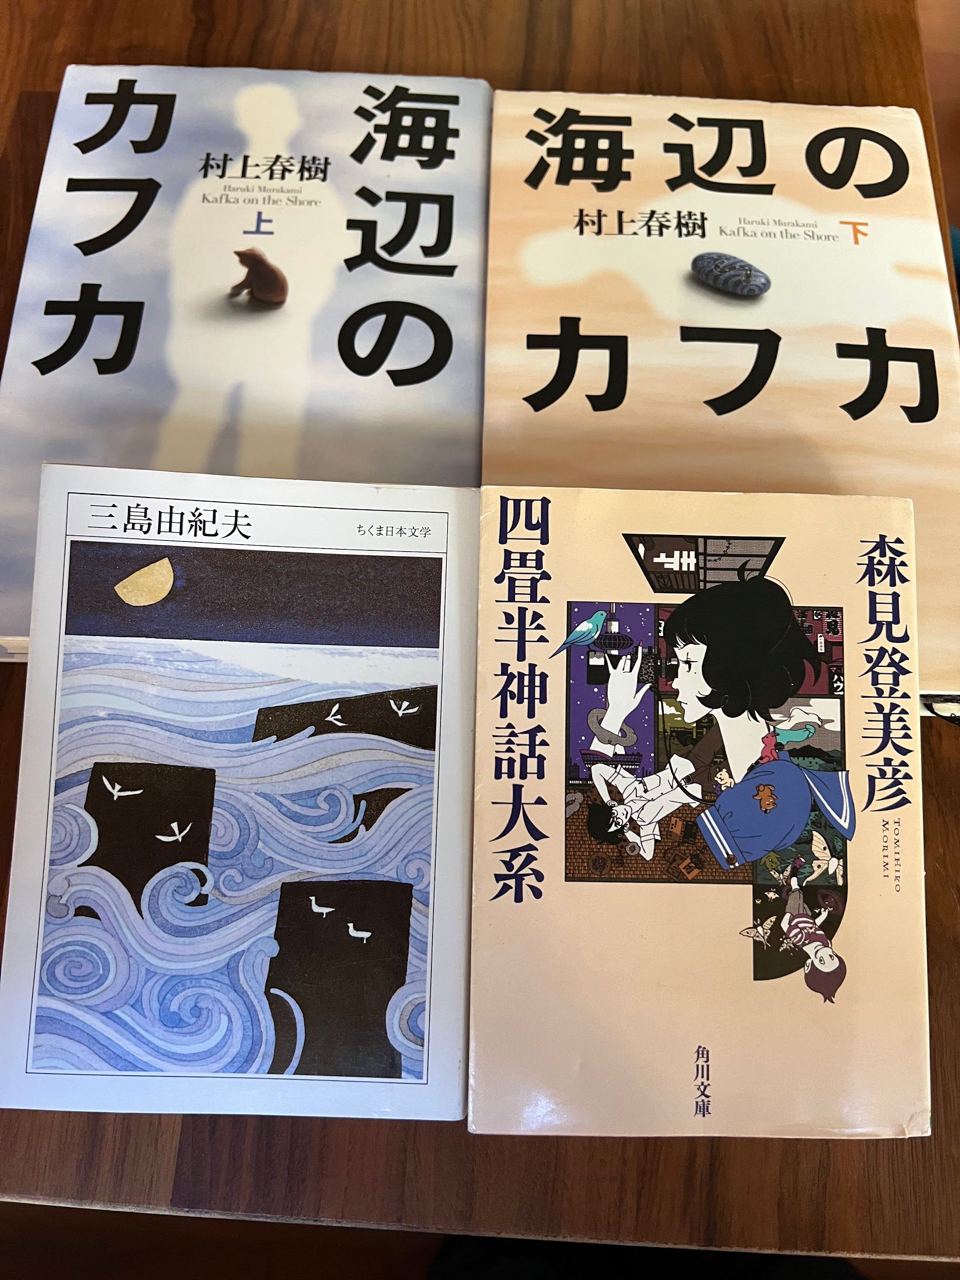 日语书